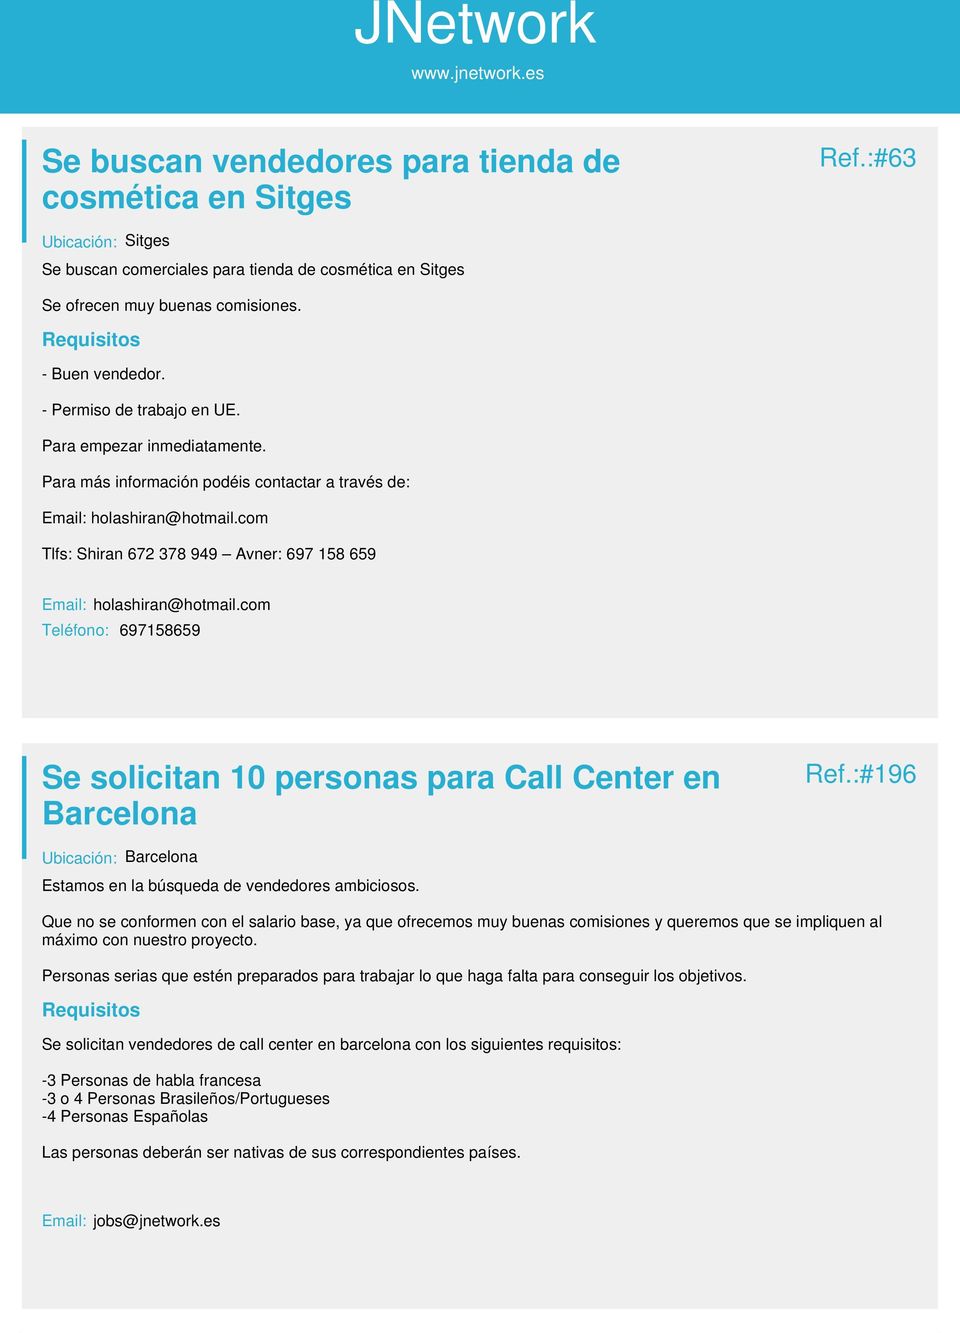 com Teléfono: 697158659 Se solicitan 10 personas para Call Center en Barcelona Ref.:#196 Estamos en la búsqueda de vendedores ambiciosos.